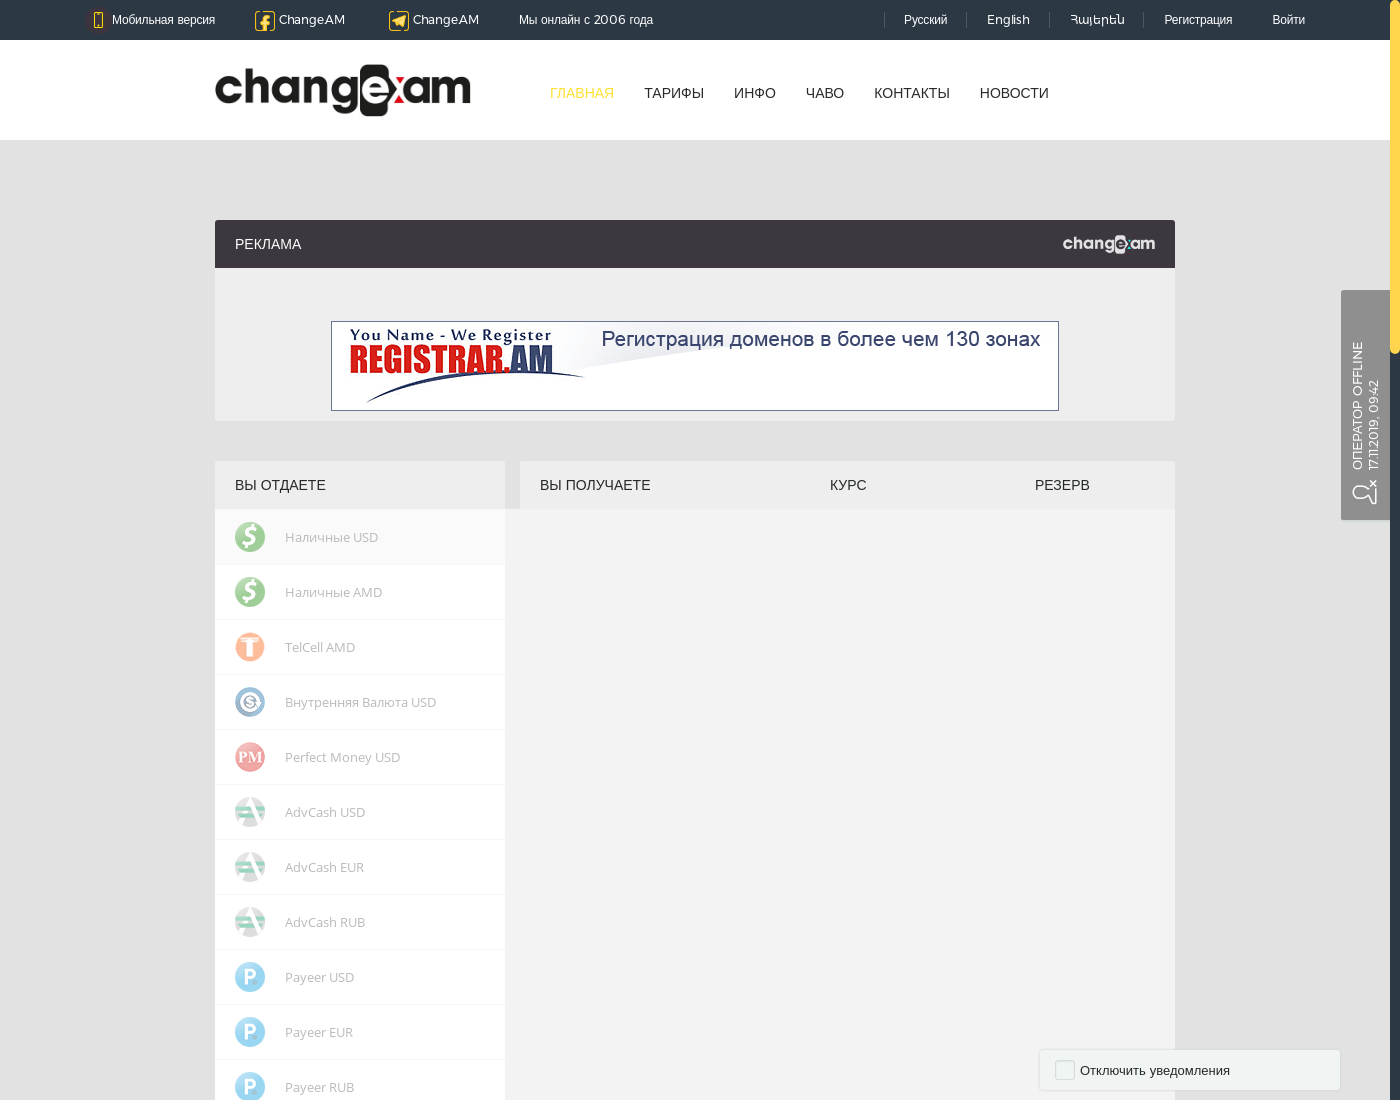 Change.AM интерфейс пользователя: домашняя страничка на языке — Русский